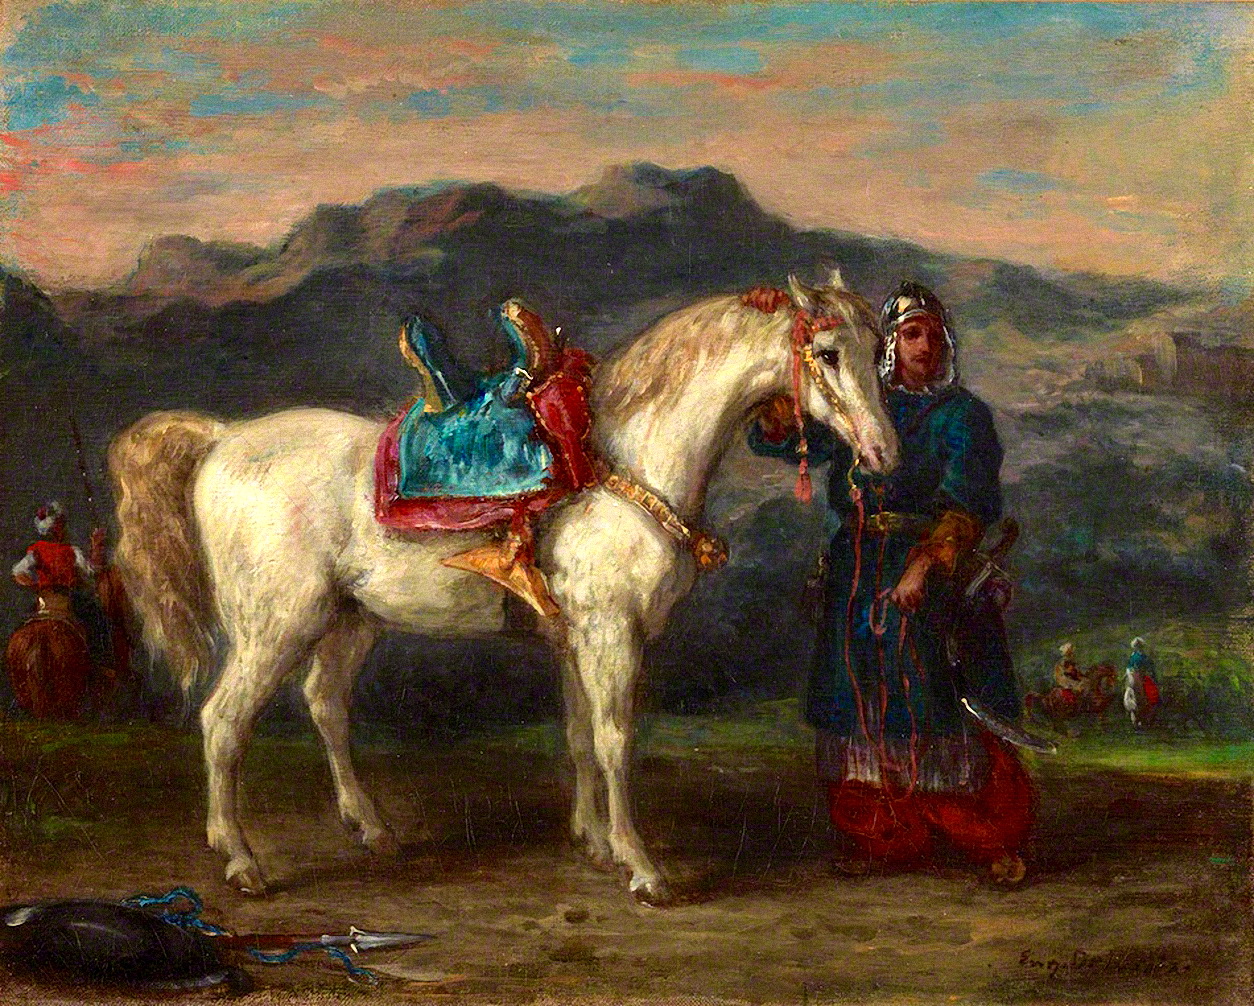 Eugene+Delacroix-1798-1863 (110).jpg